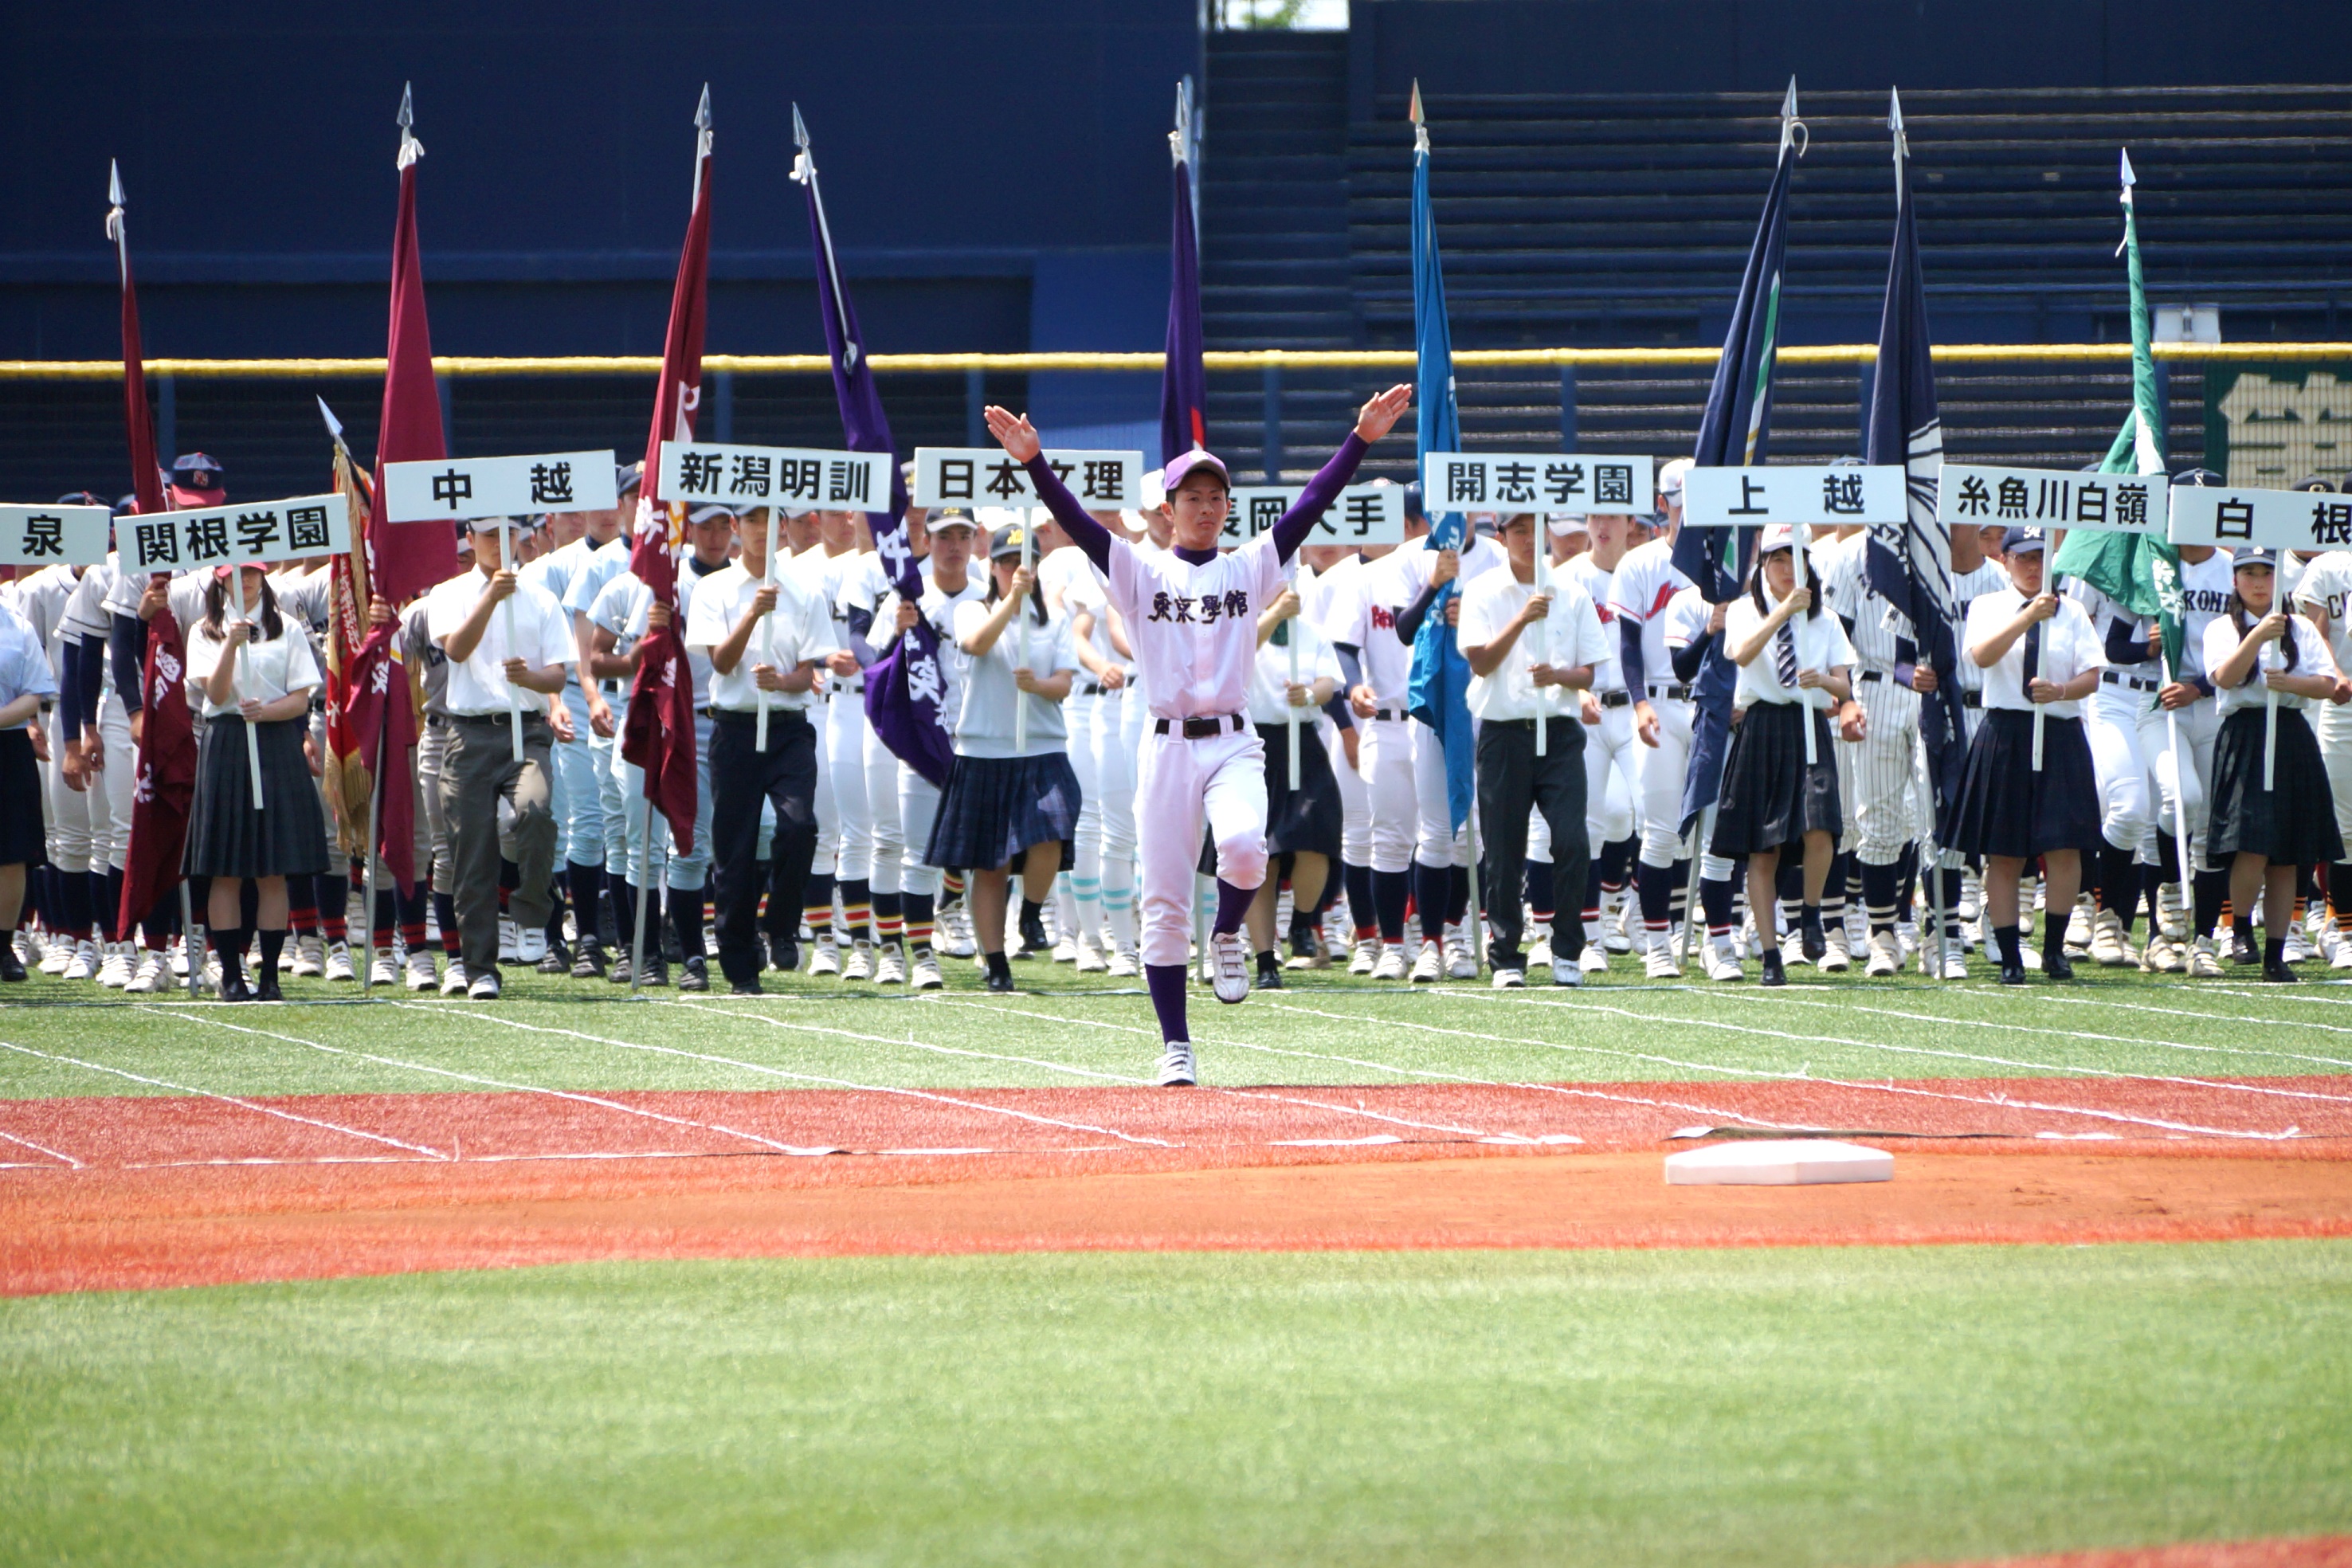 高校野球 新潟大会が開幕 開幕試合は新潟第一が勝利 新潟野球ドットコム